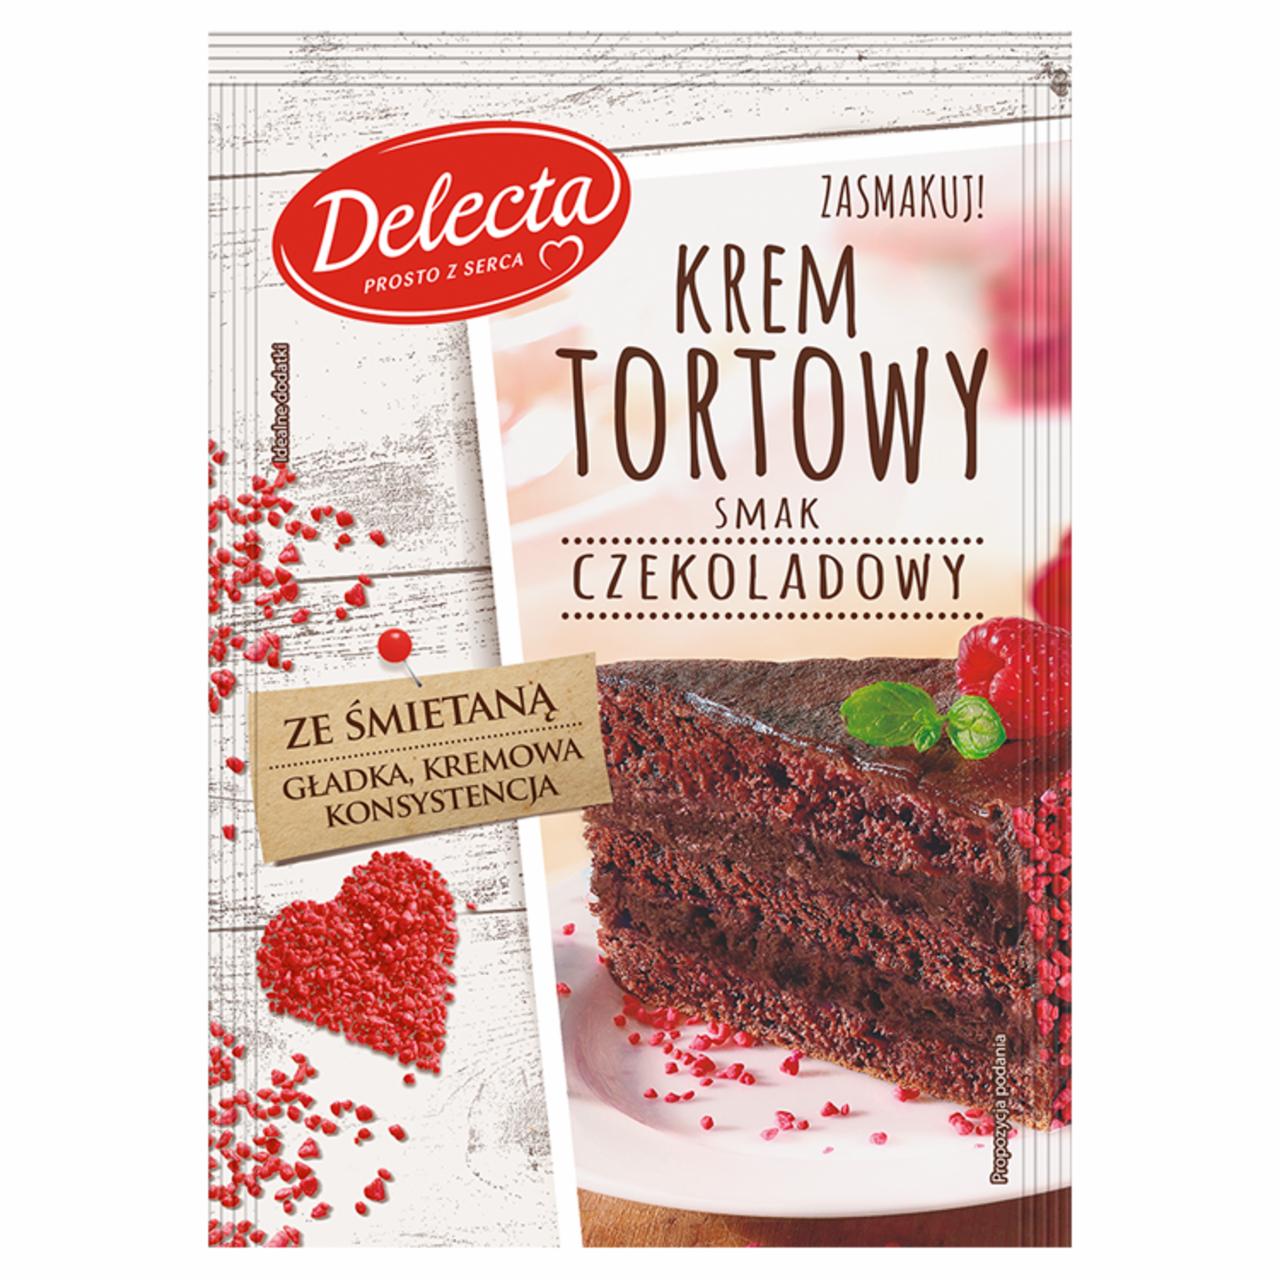 Zdjęcia - Delecta Krem tortowy smak czekoladowy 122 g